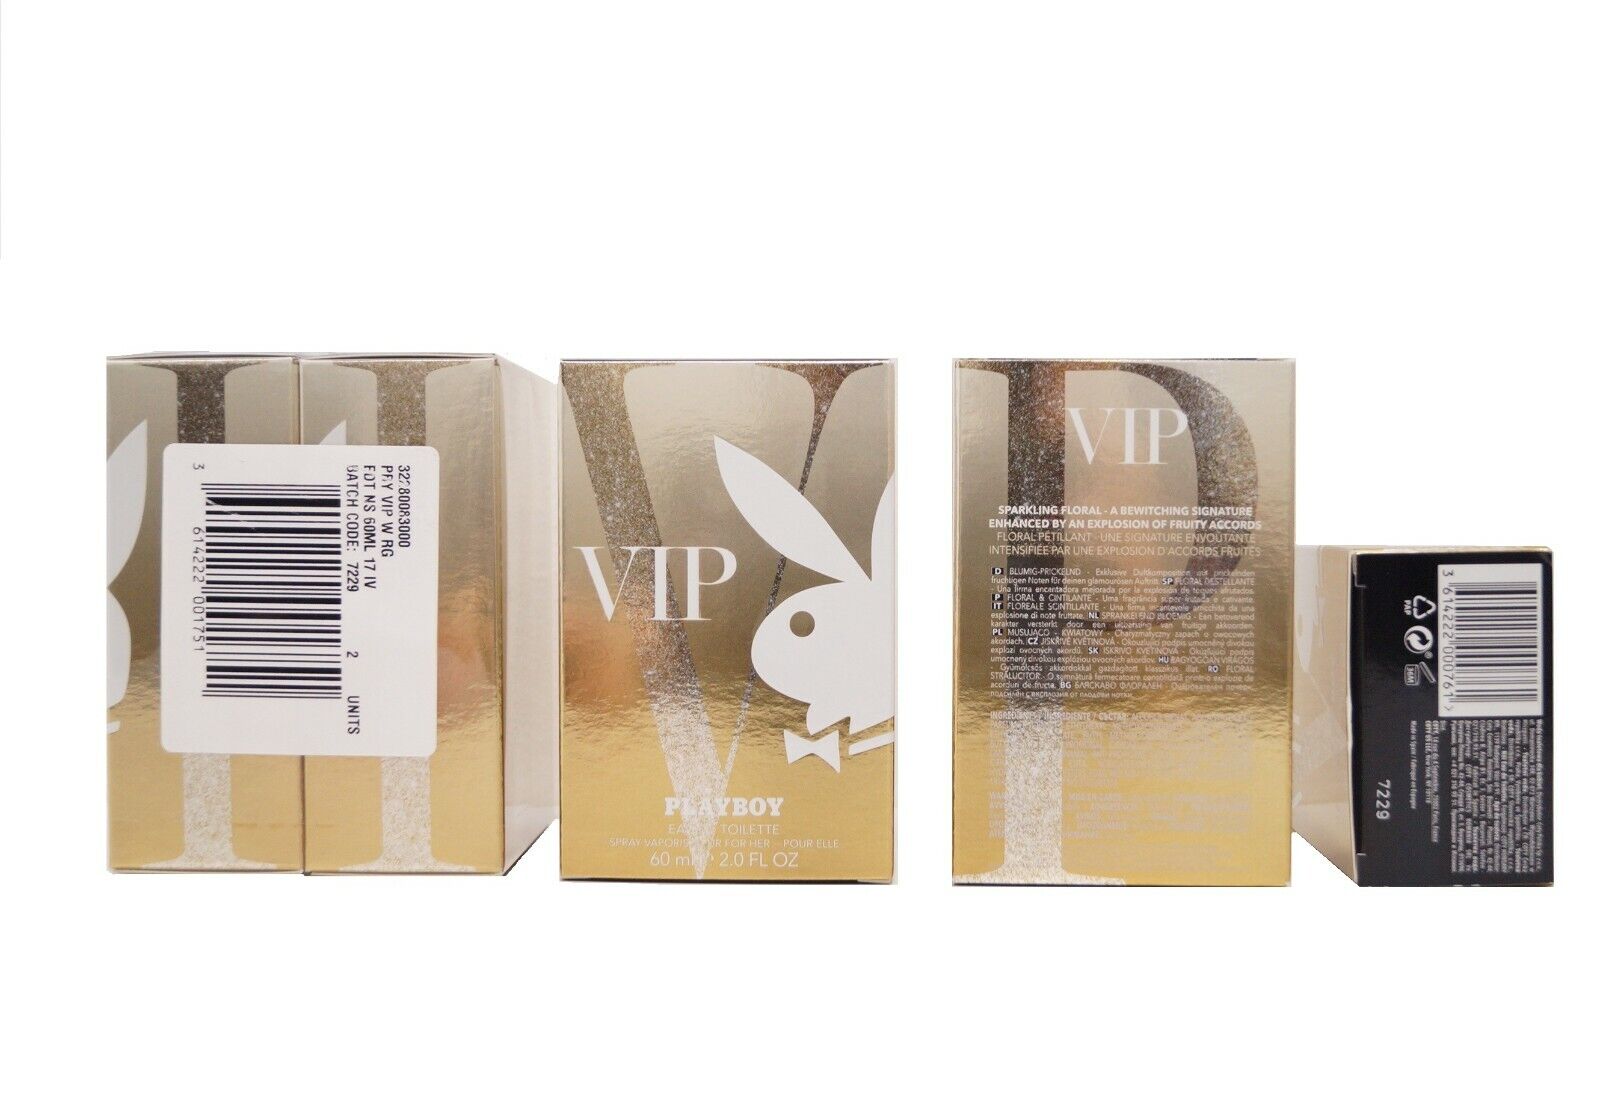 2x Playboy - VIP For Her - Eau de Toilette für Damen - Parfum - 2x 60ml